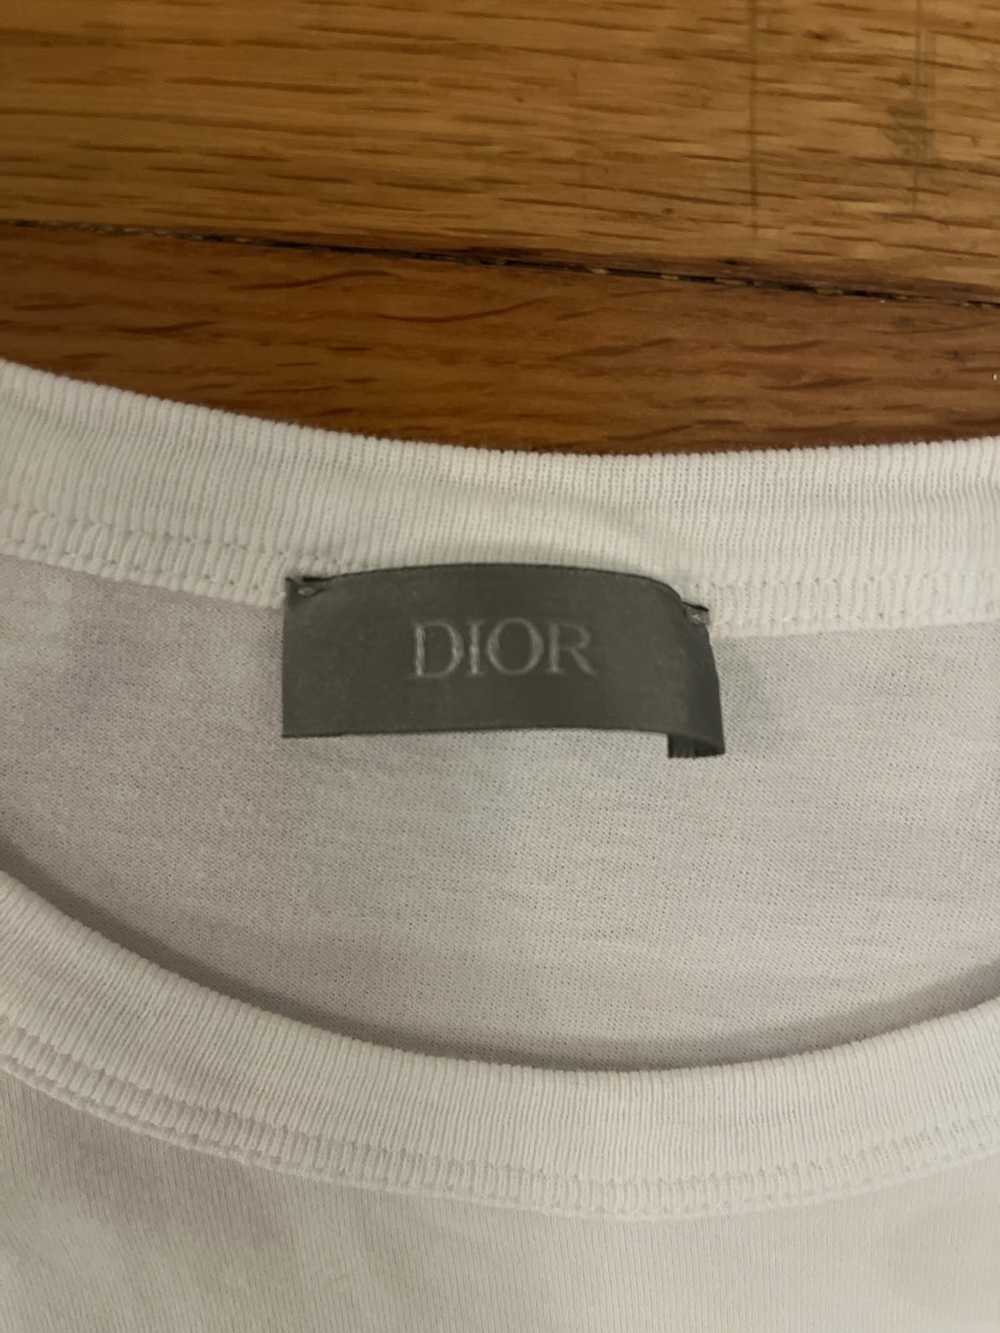 Dior Dior CD Icon Tee White Size L - image 3